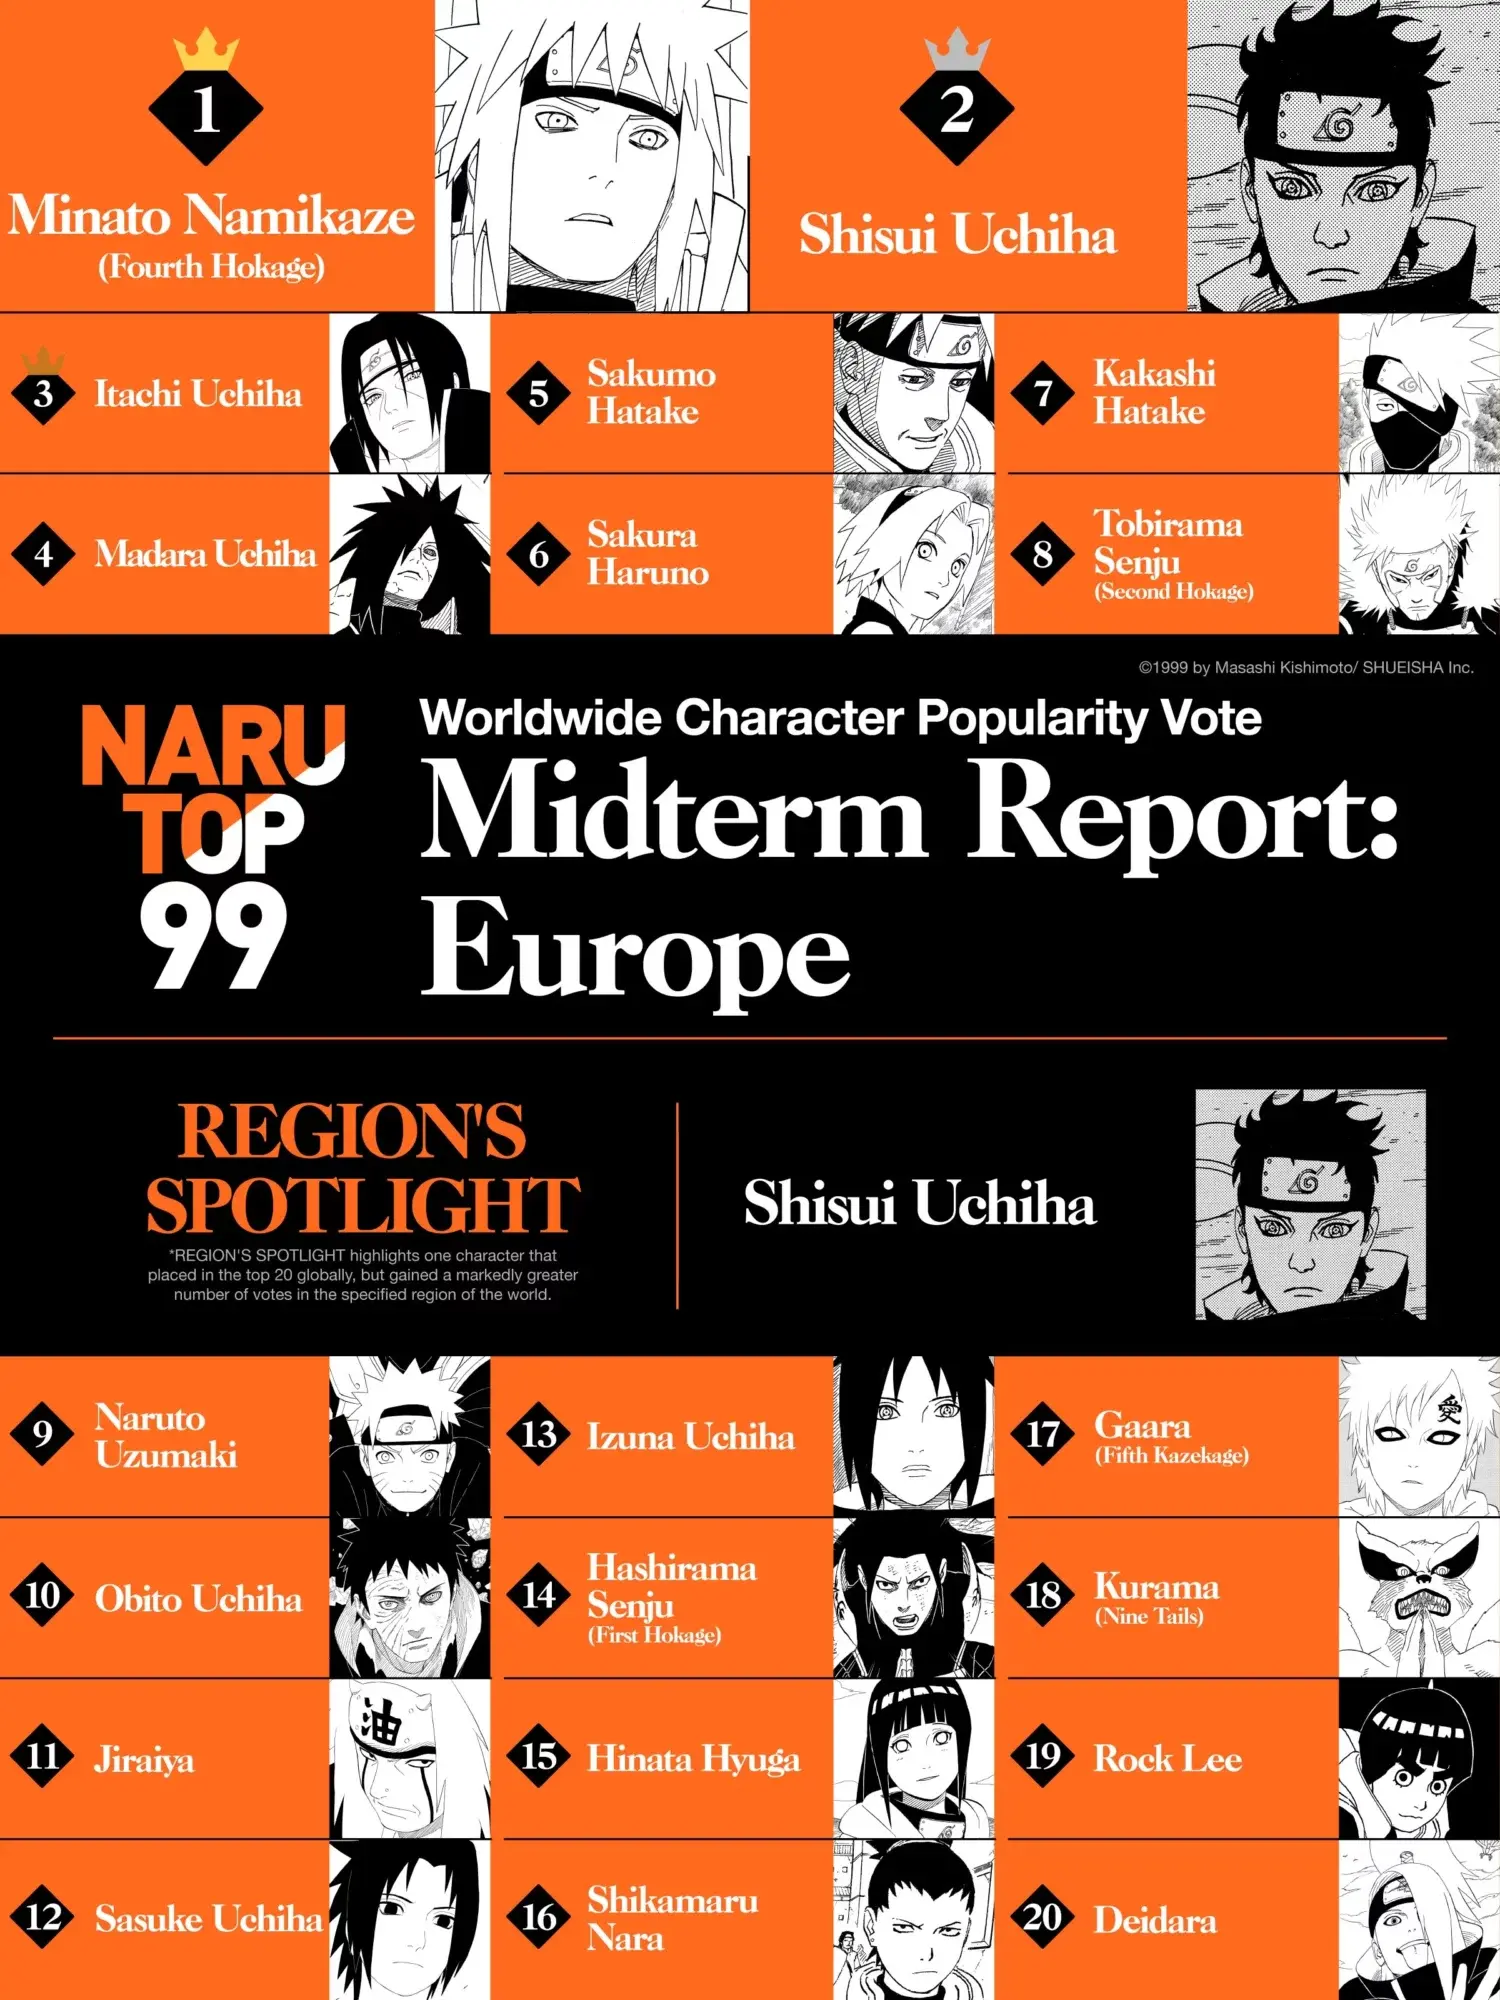 Encuesta revela los 10 mejores openings de Naruto según los